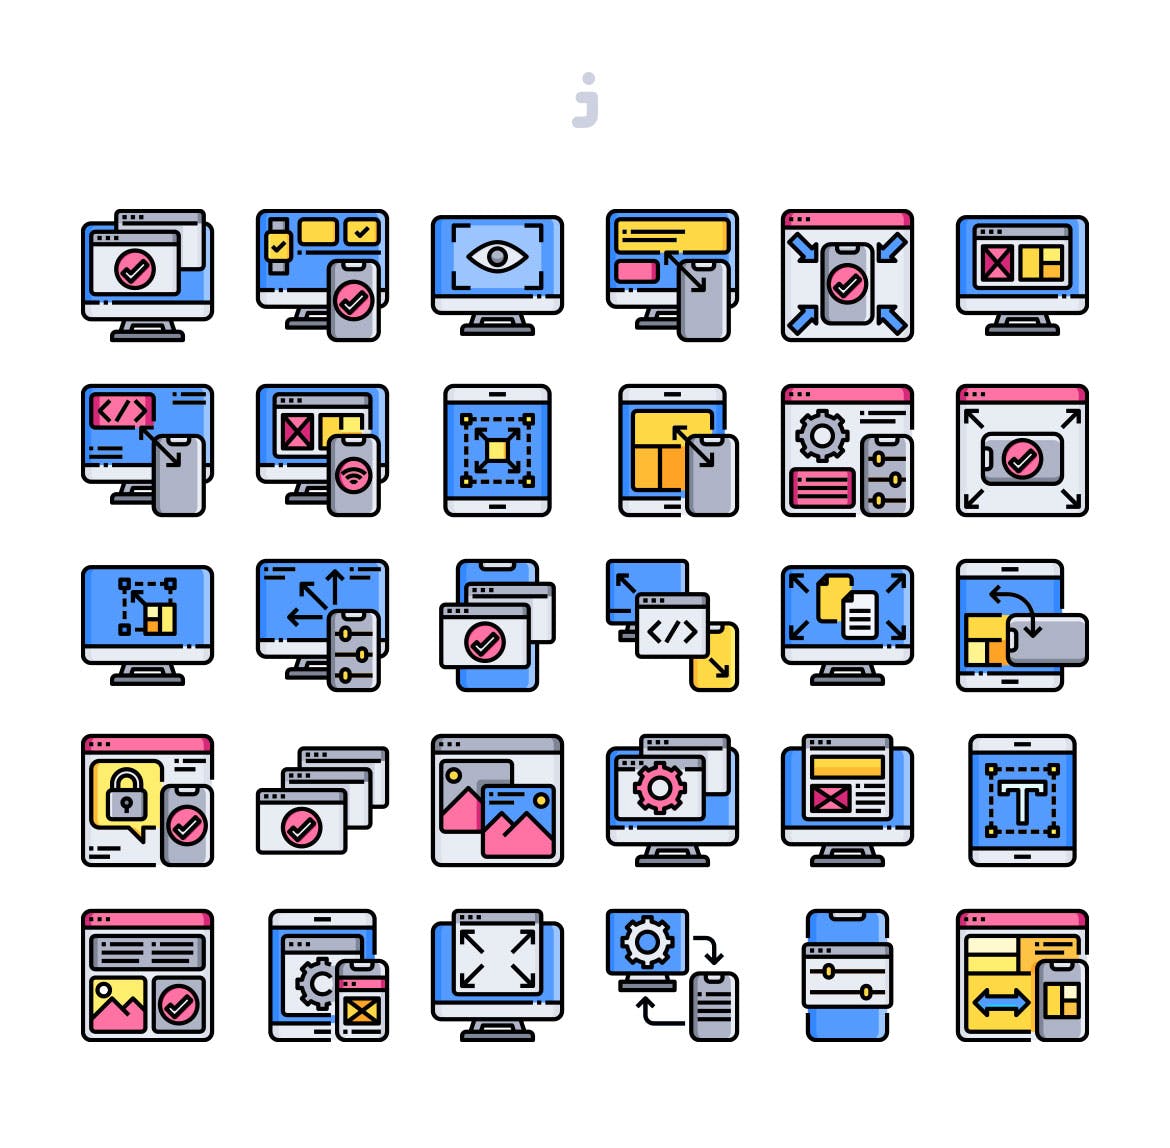 30枚响应式设计主题矢量图标素材 30 Responsive Design Icons插图1